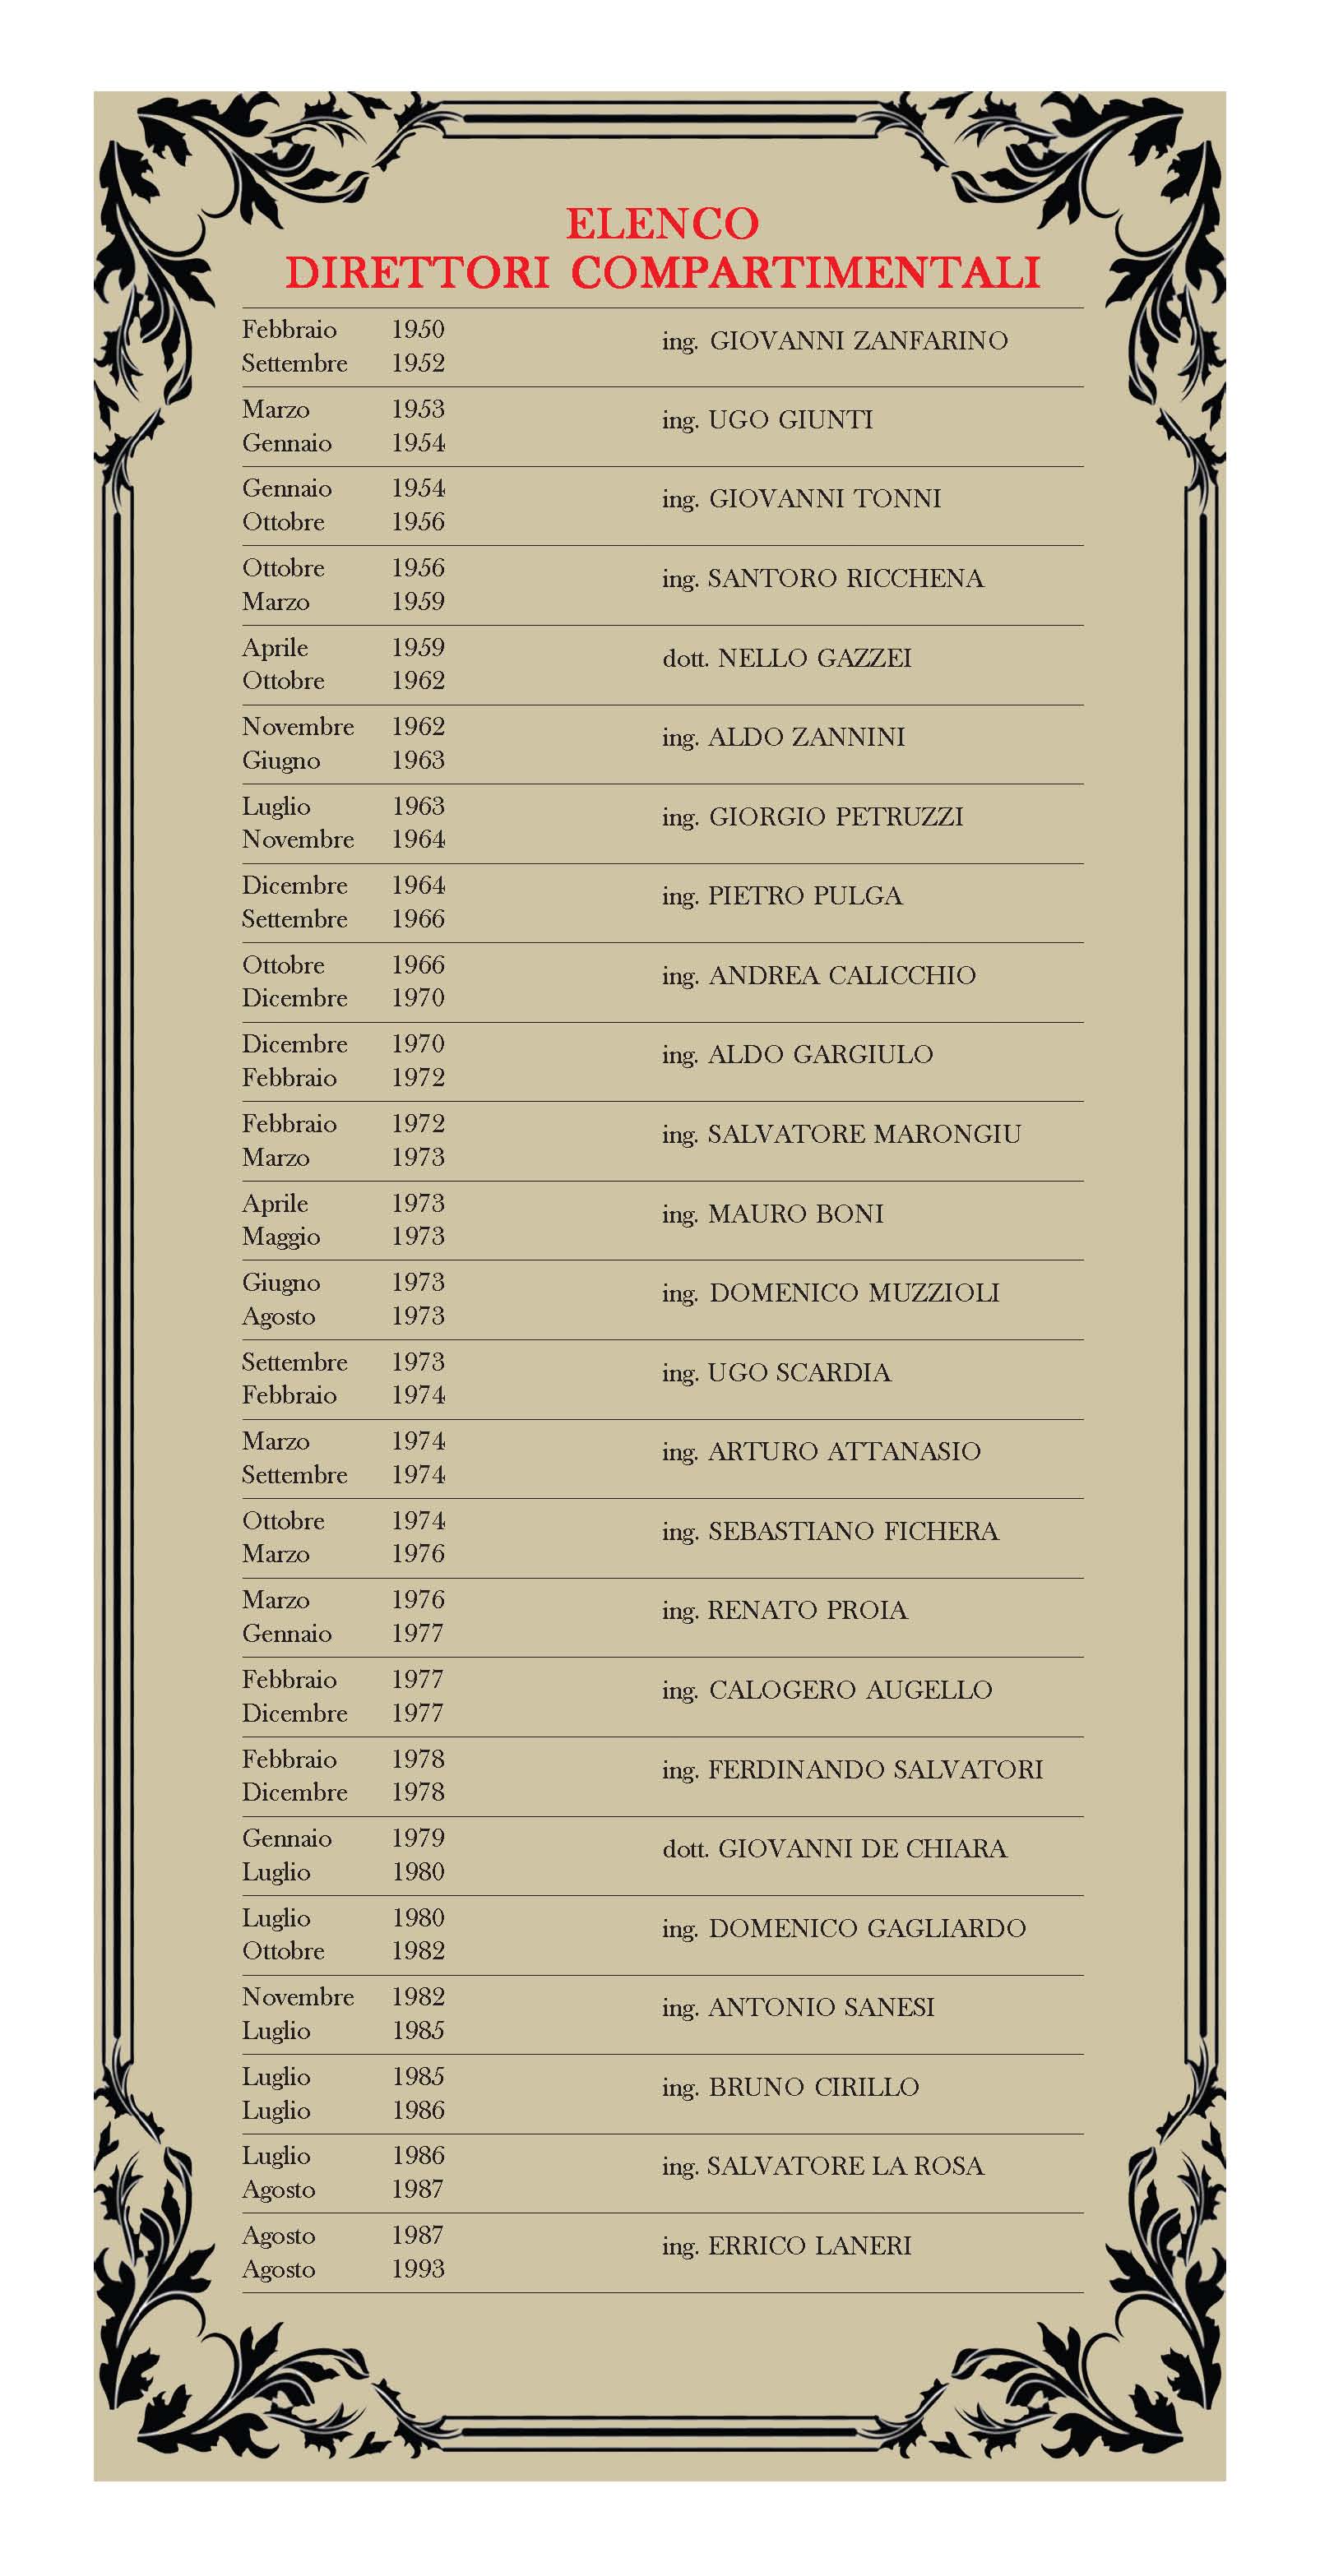 Elenco dei Direttori Compartimentali dal 1950 al 1993